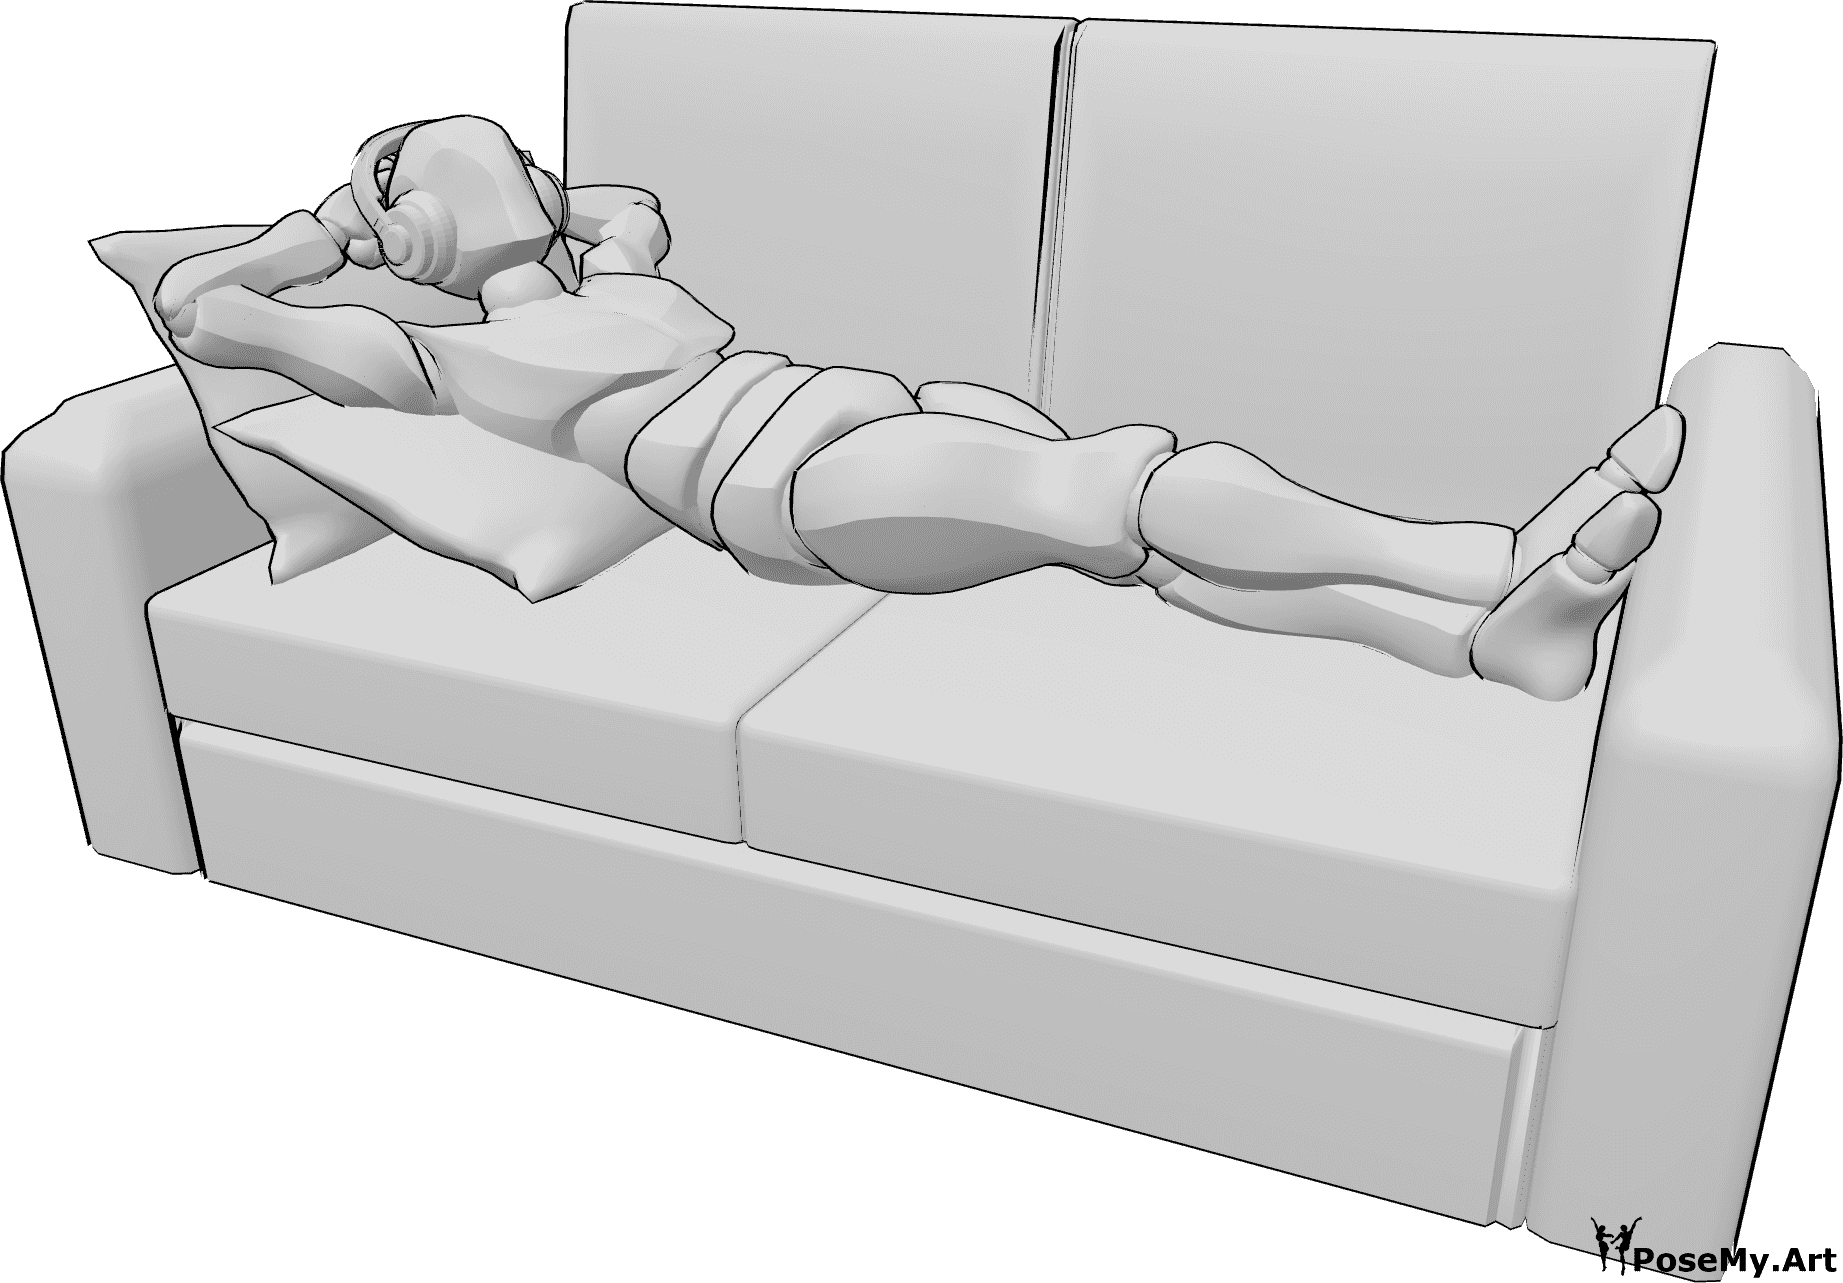 Referencia de poses- Hombre tumbado con auriculares - El hombre está cómodamente tumbado en el sofá escuchando música con los auriculares.